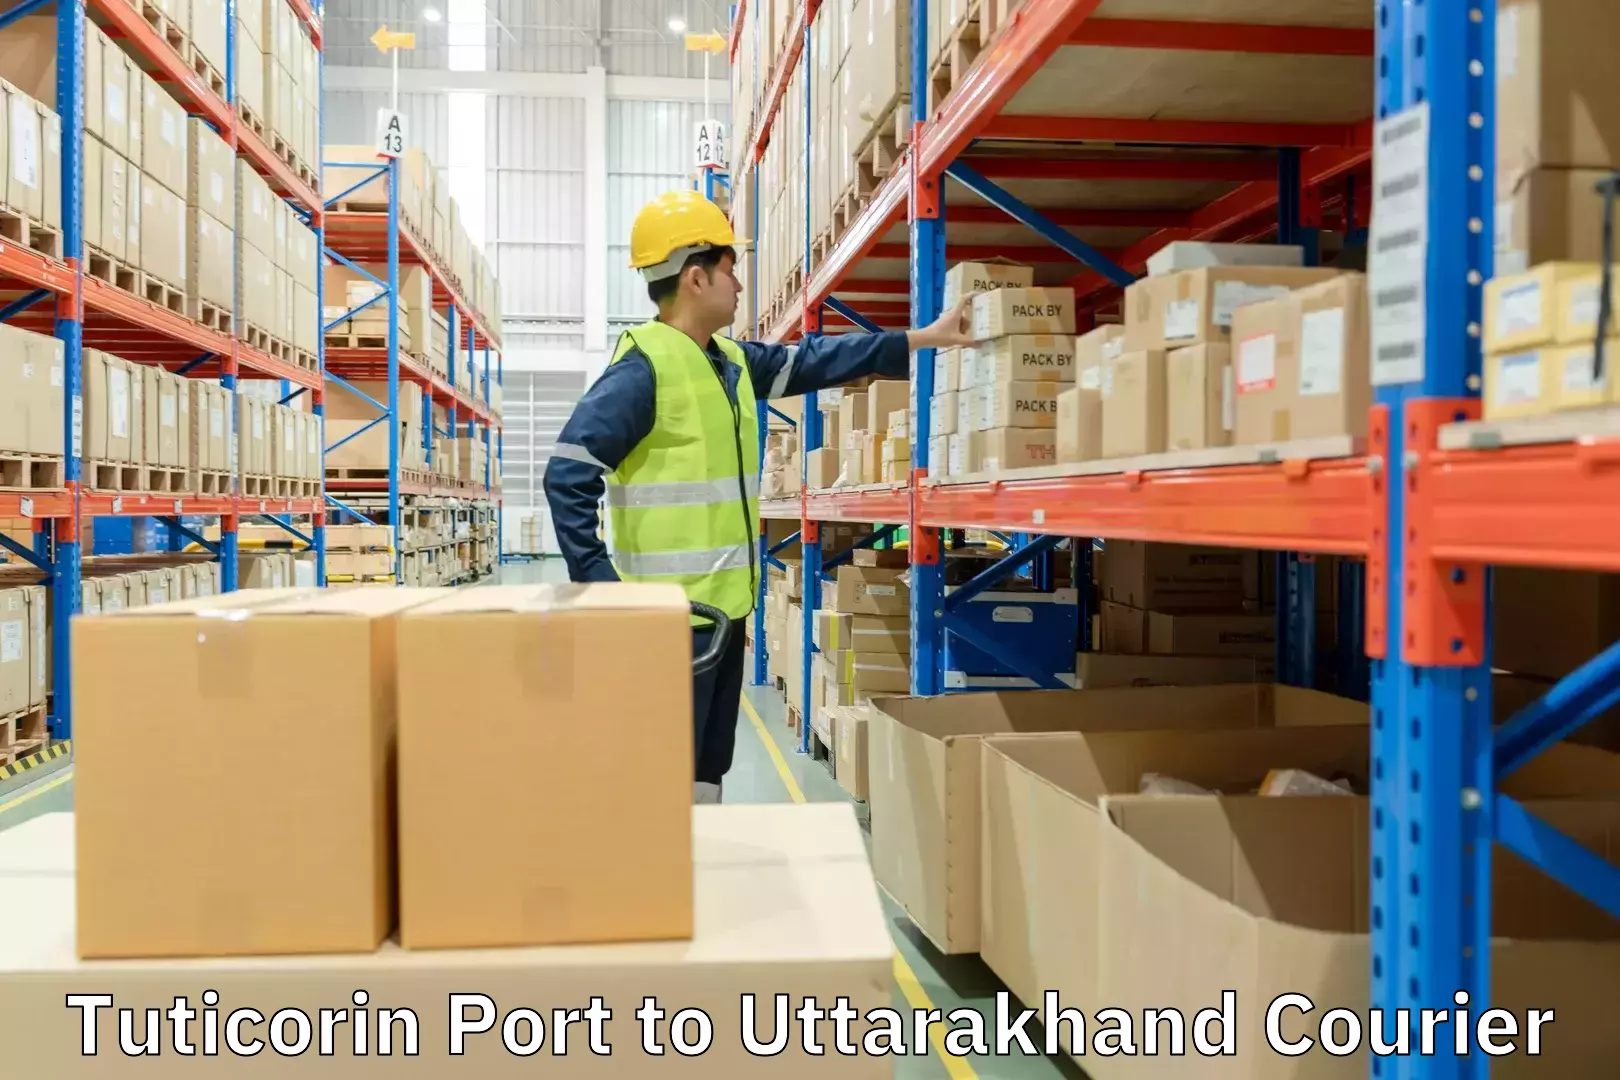 Package forwarding in Tuticorin Port to Uttarakhand